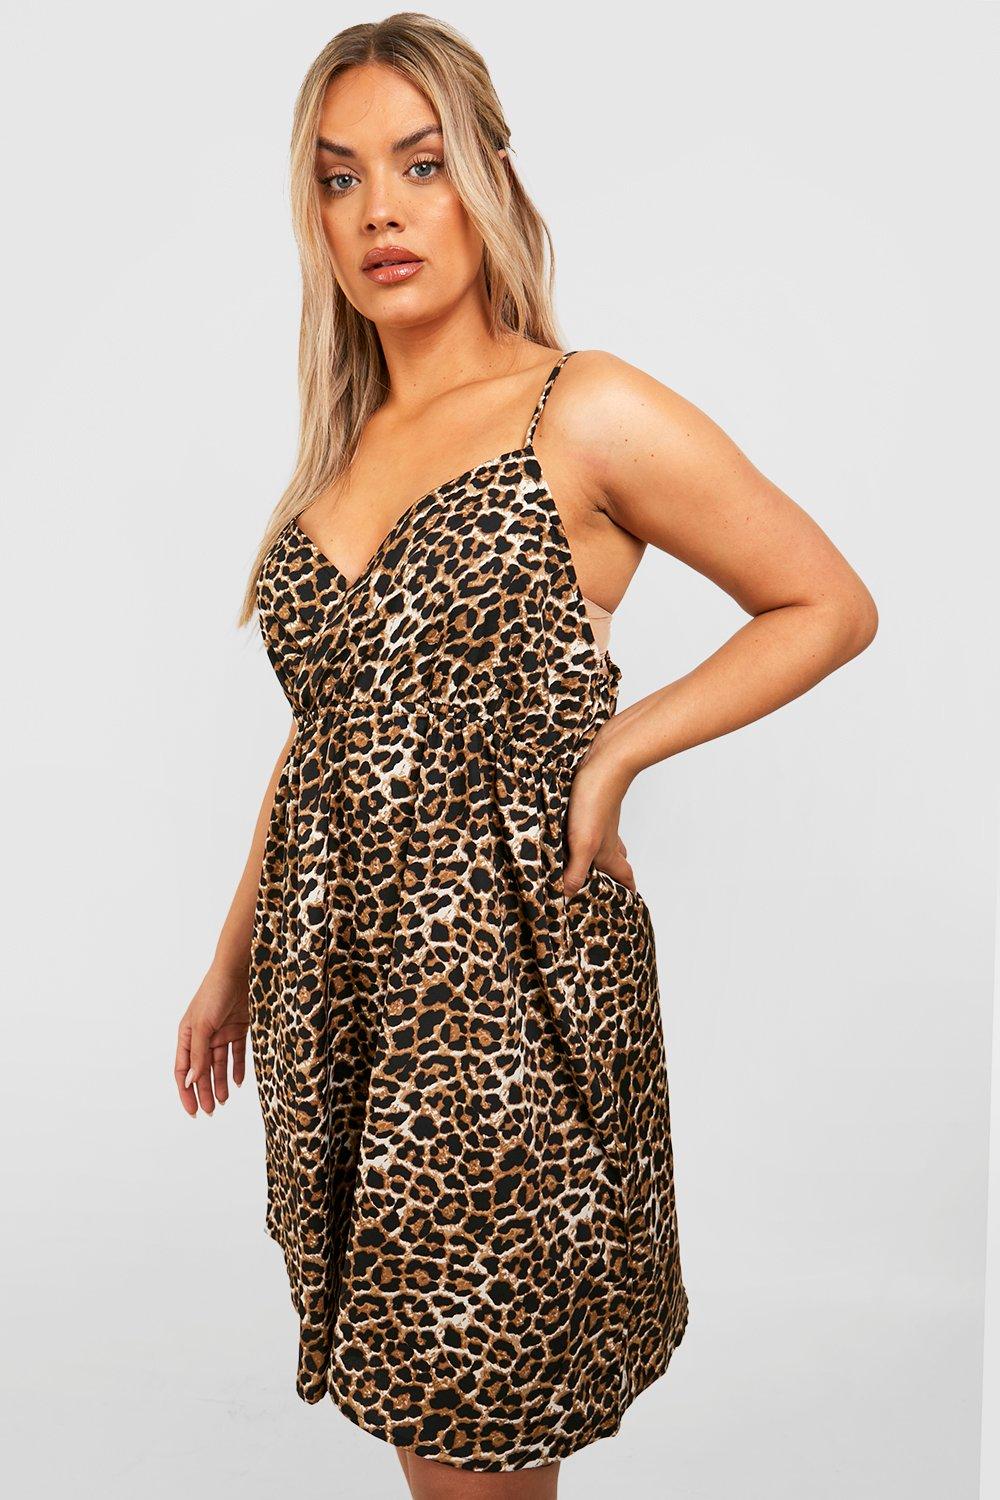 Сарафан с леопардовым платьем plus Boohoo, леопардовый сарафан с леопардовым принтом 44 размер